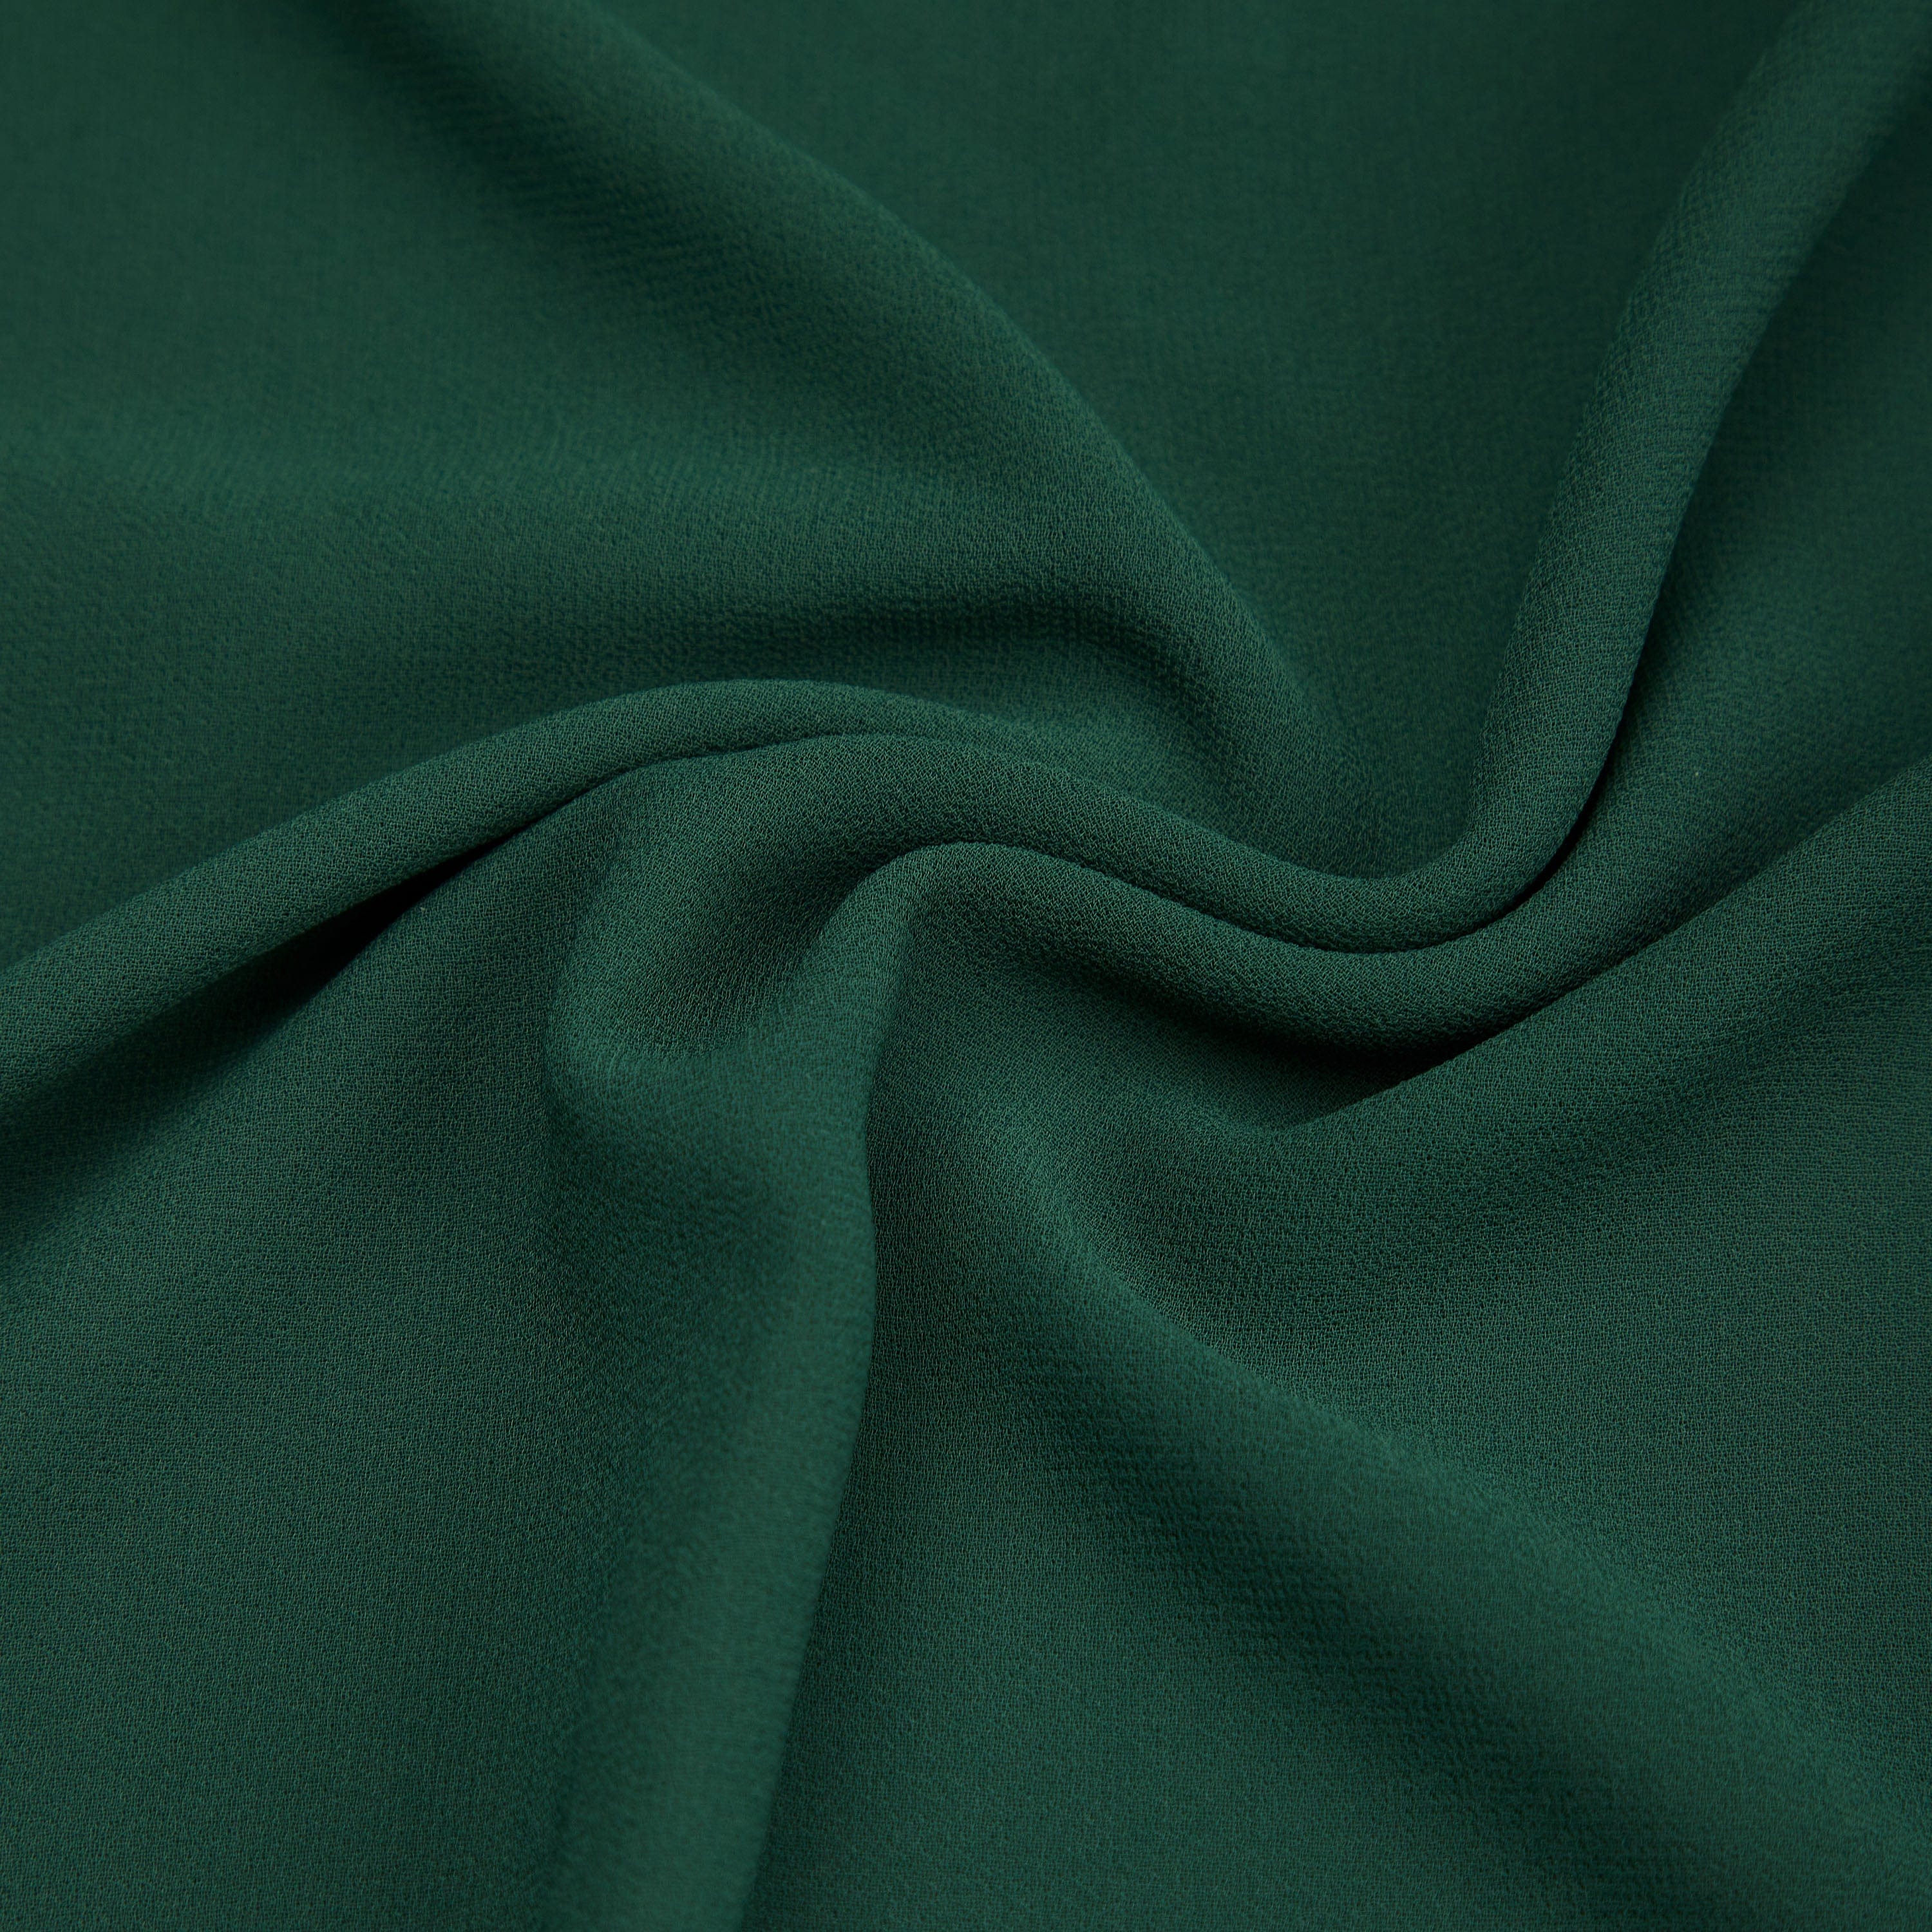 Wholesale Chiffon Fabric by the Yard